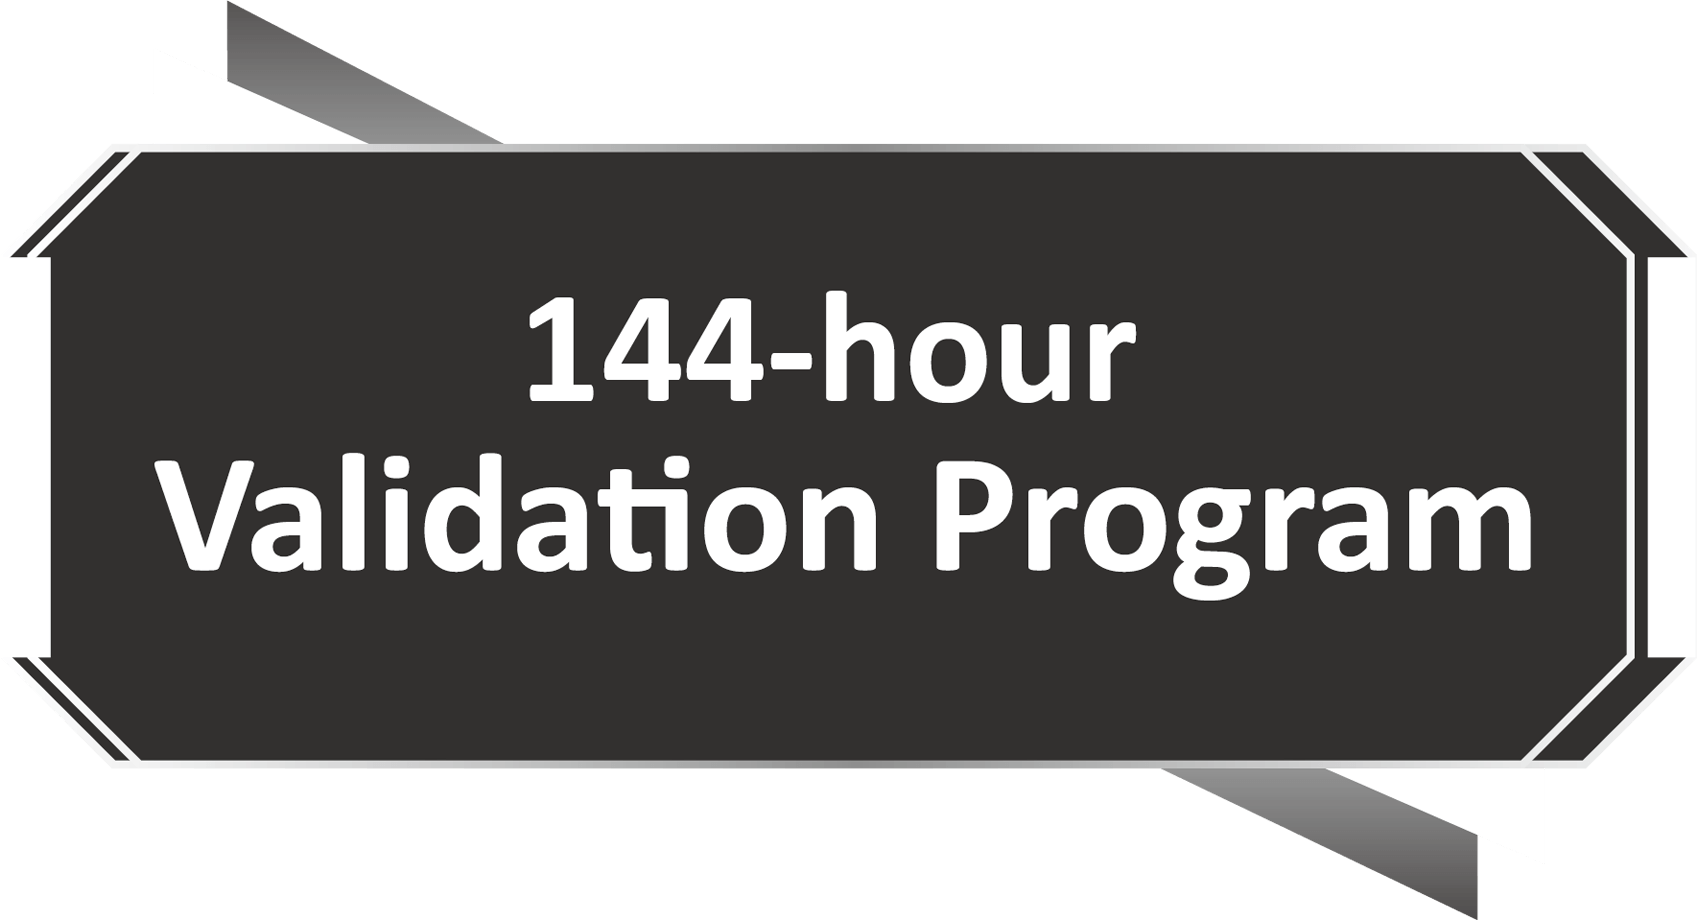 Programme de validation en 144 heures logo.